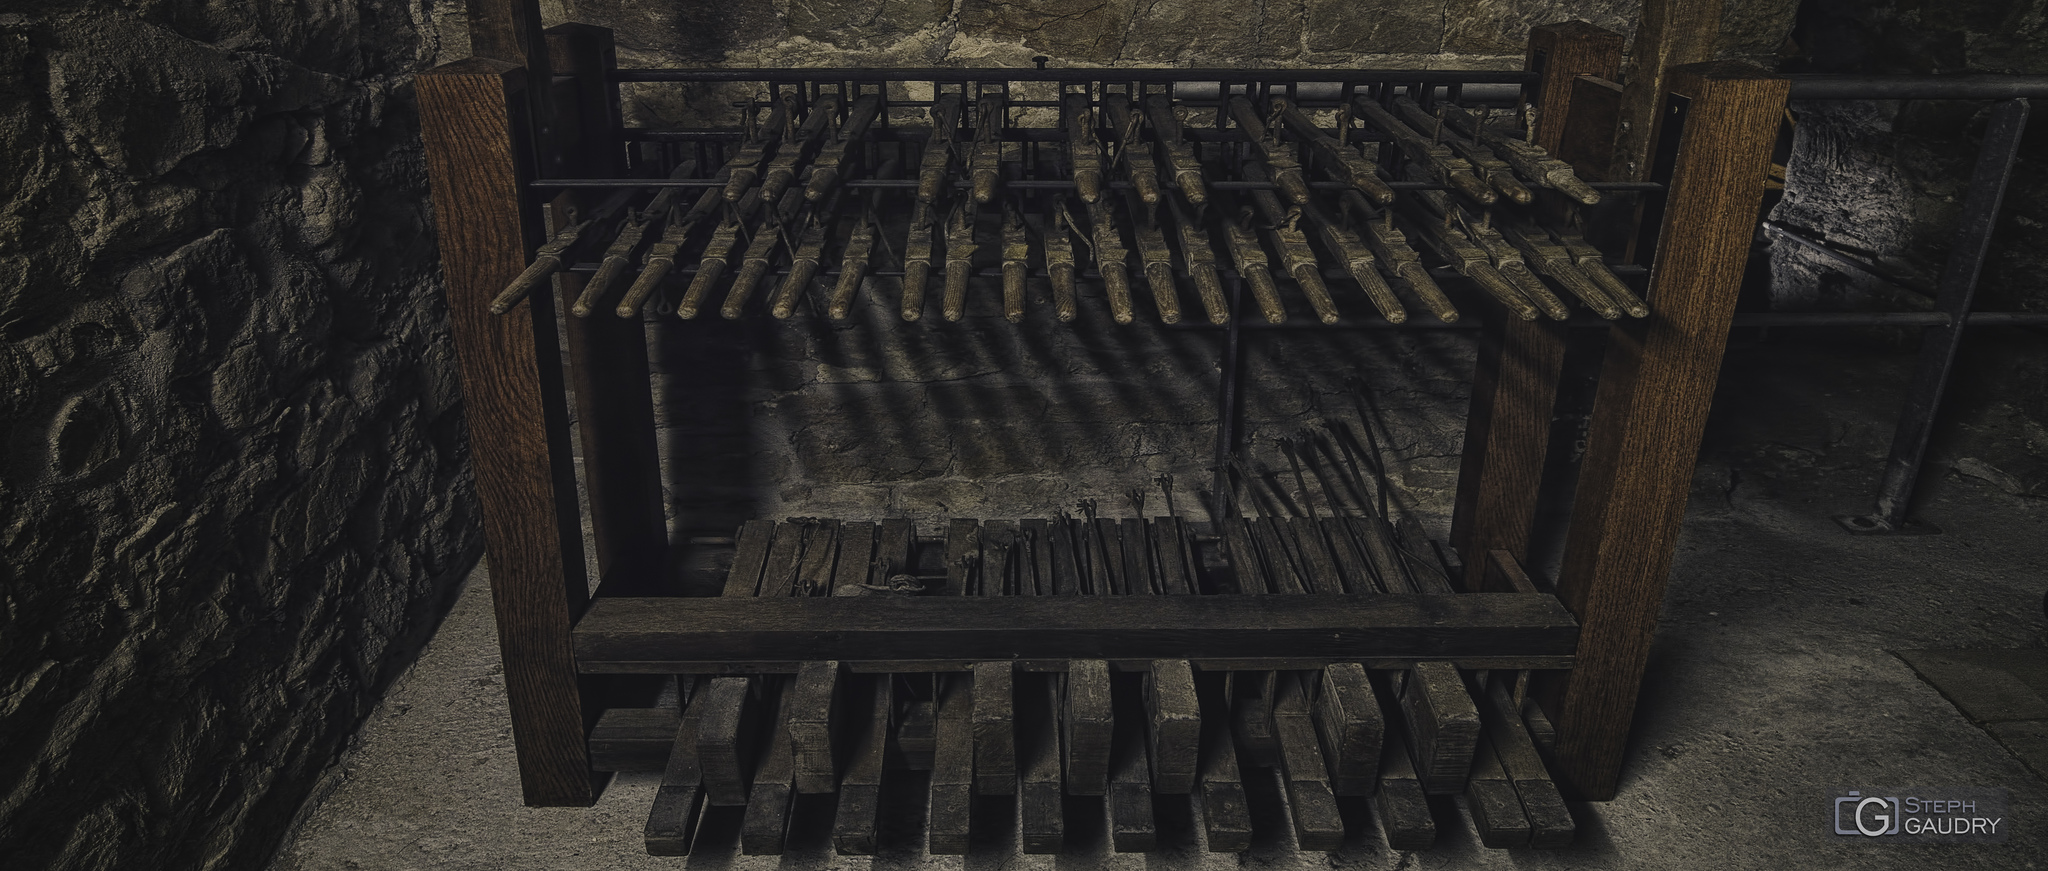 Clavier du carillon de la collégiale Saint-Barthélemy [Klik om de diavoorstelling te starten]